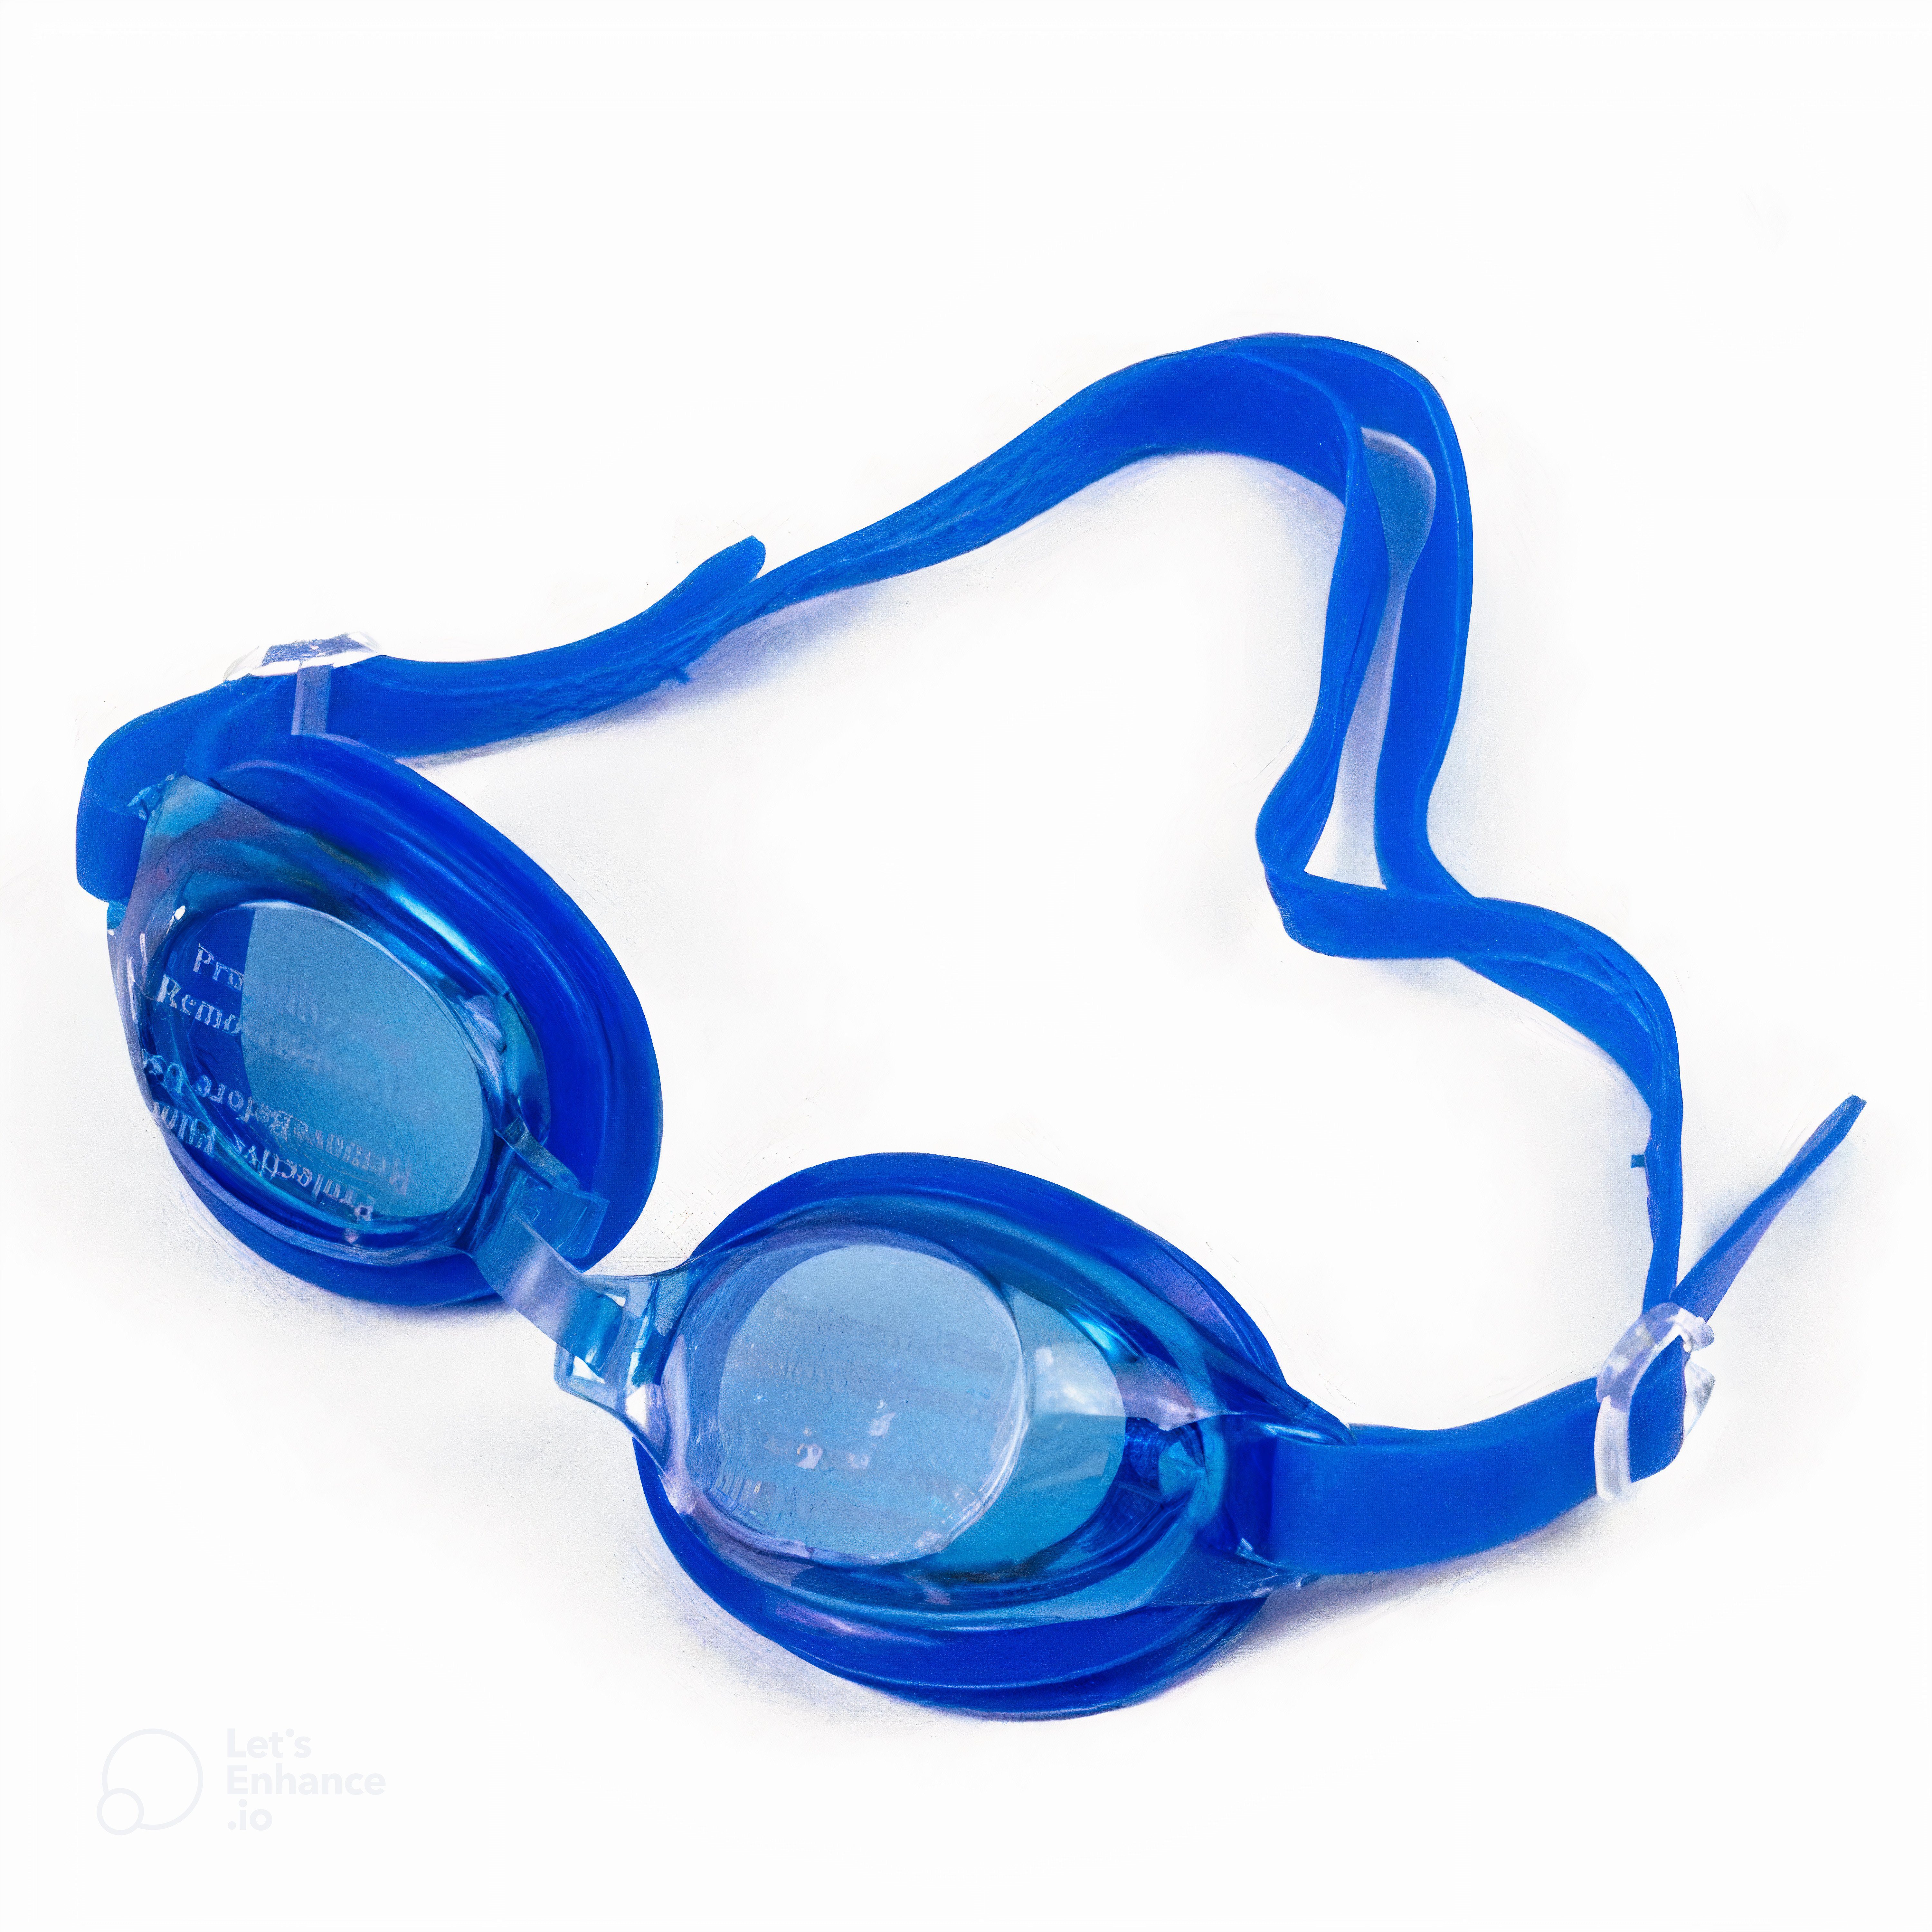 H-basics Schwimmbrille »Kinder Schwimmbrille mit Ohrstöpsel -  Taucherbrille, Jungen, Mädchen, Unisex, Antibeschlag UV-Schutz, Spiegel /  Klare Linse« online kaufen | OTTO